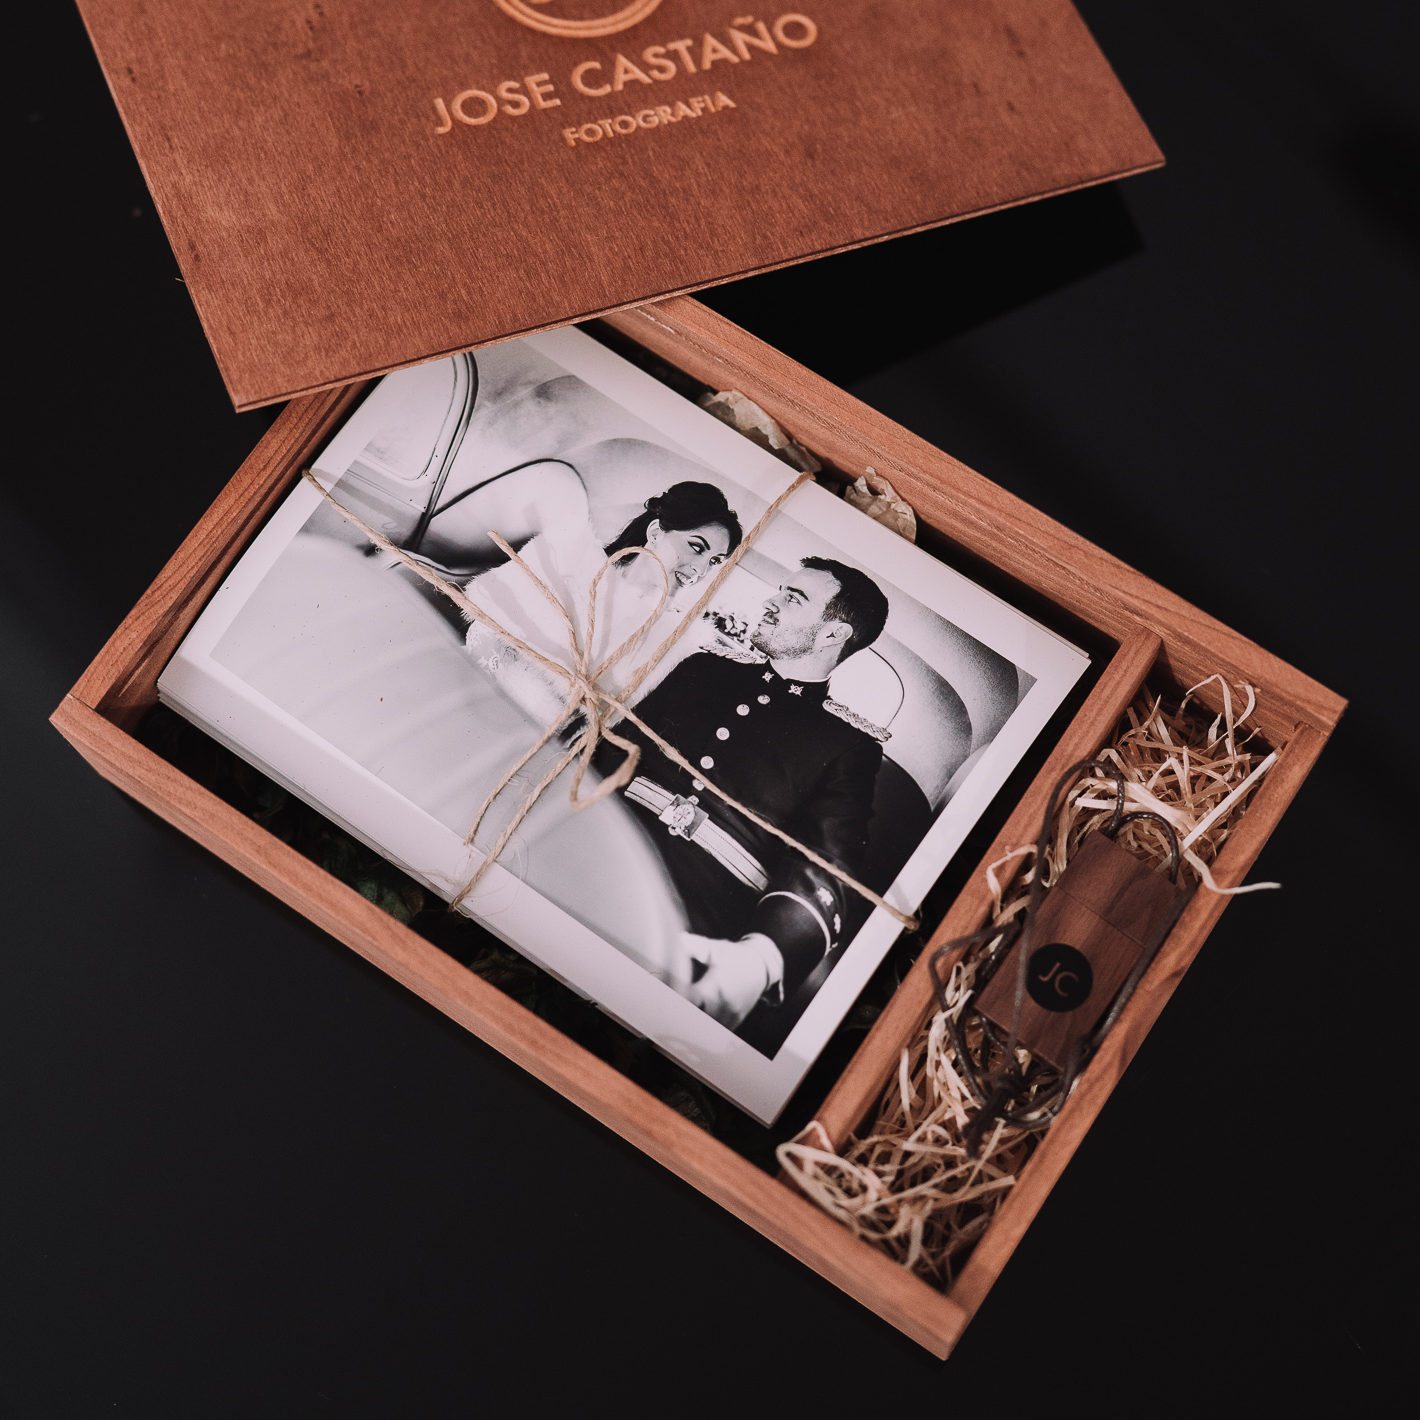 DSC7711 edited - Jose Castano Fotografo de bodas Asturias